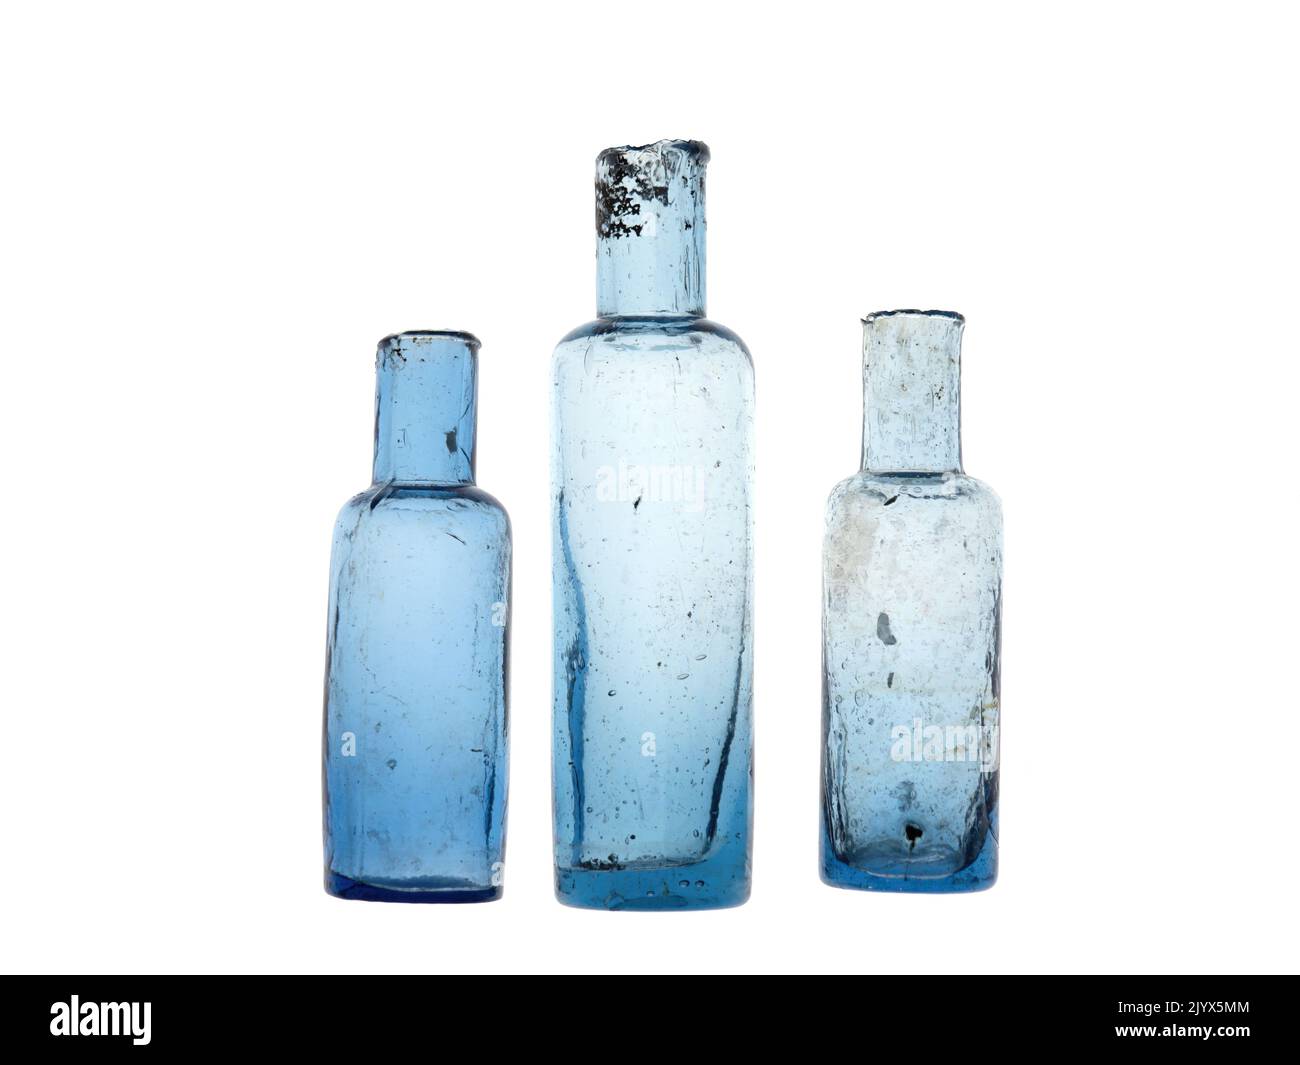 Alte Flaschen mit gescherten Lippen, handgeblasene Sammlerstücke, antik. Isoliert über Weiß. Stockfoto